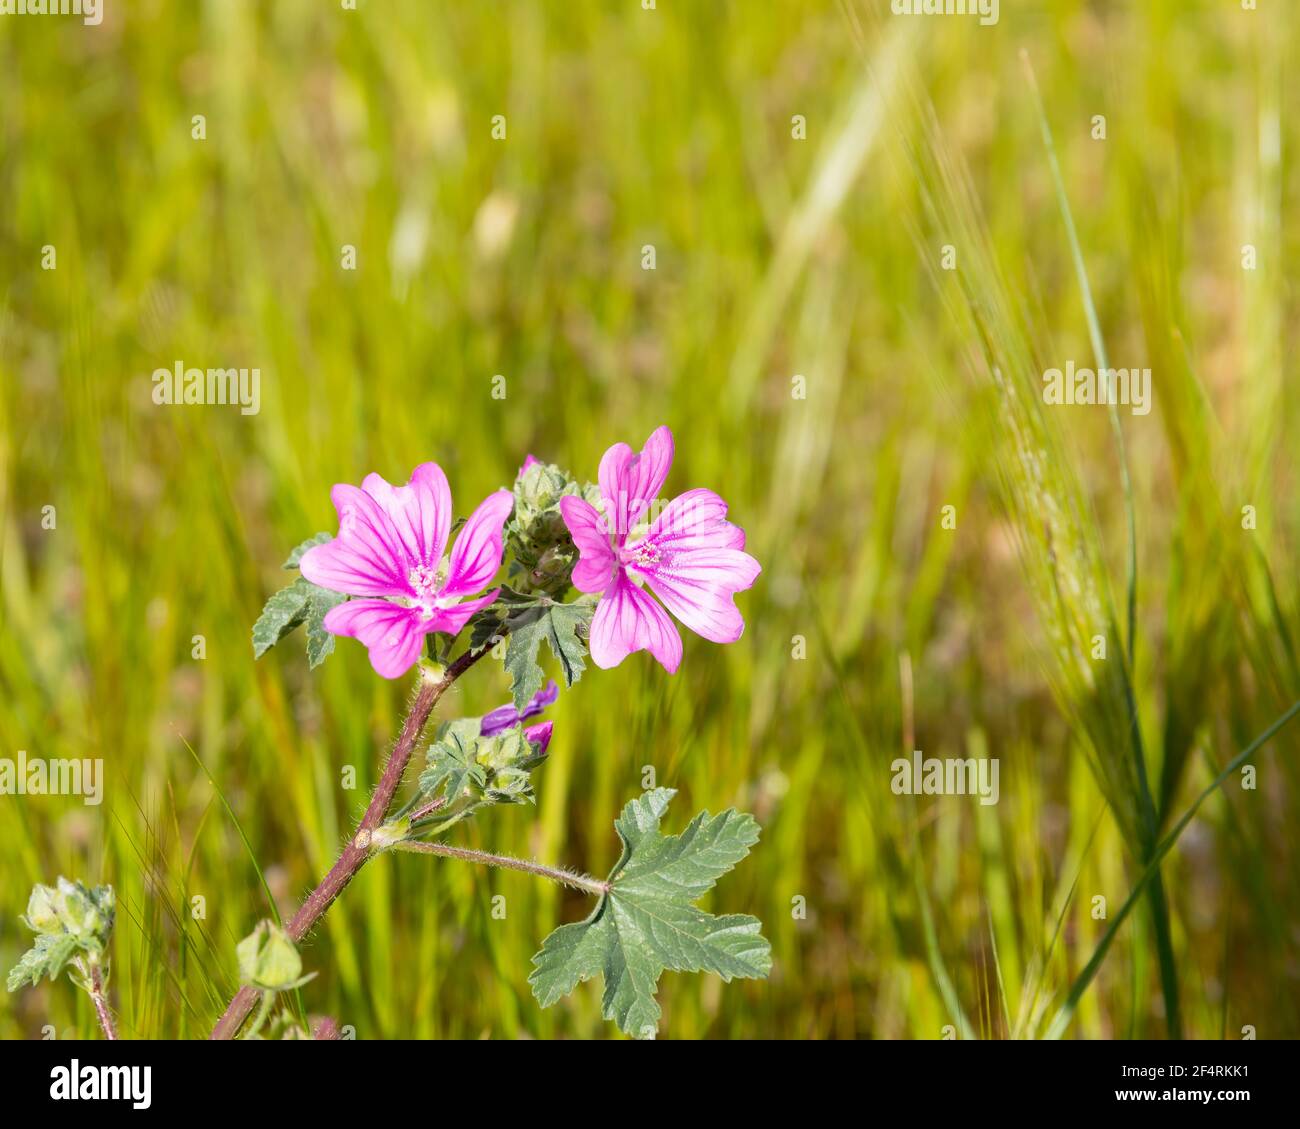 Schönheit In Der Natur. Speicherplatz Kopieren. Rosafarbene Wildblume in der Wiese in voller Blüte. Stock-Bild. Stockfoto